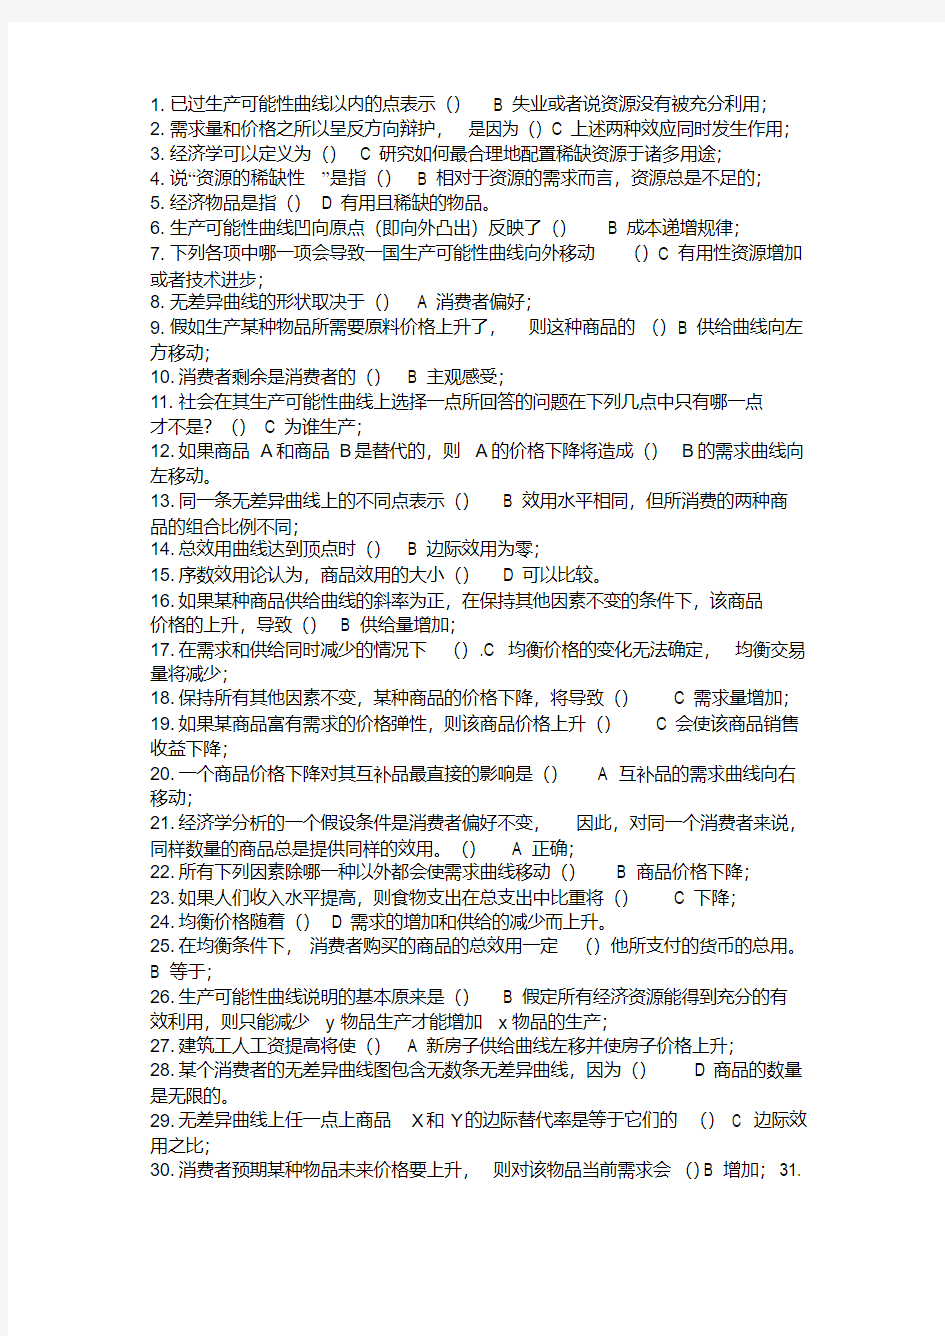 最新浙大远程经济学作业考试专用答案(1-9章).pdf